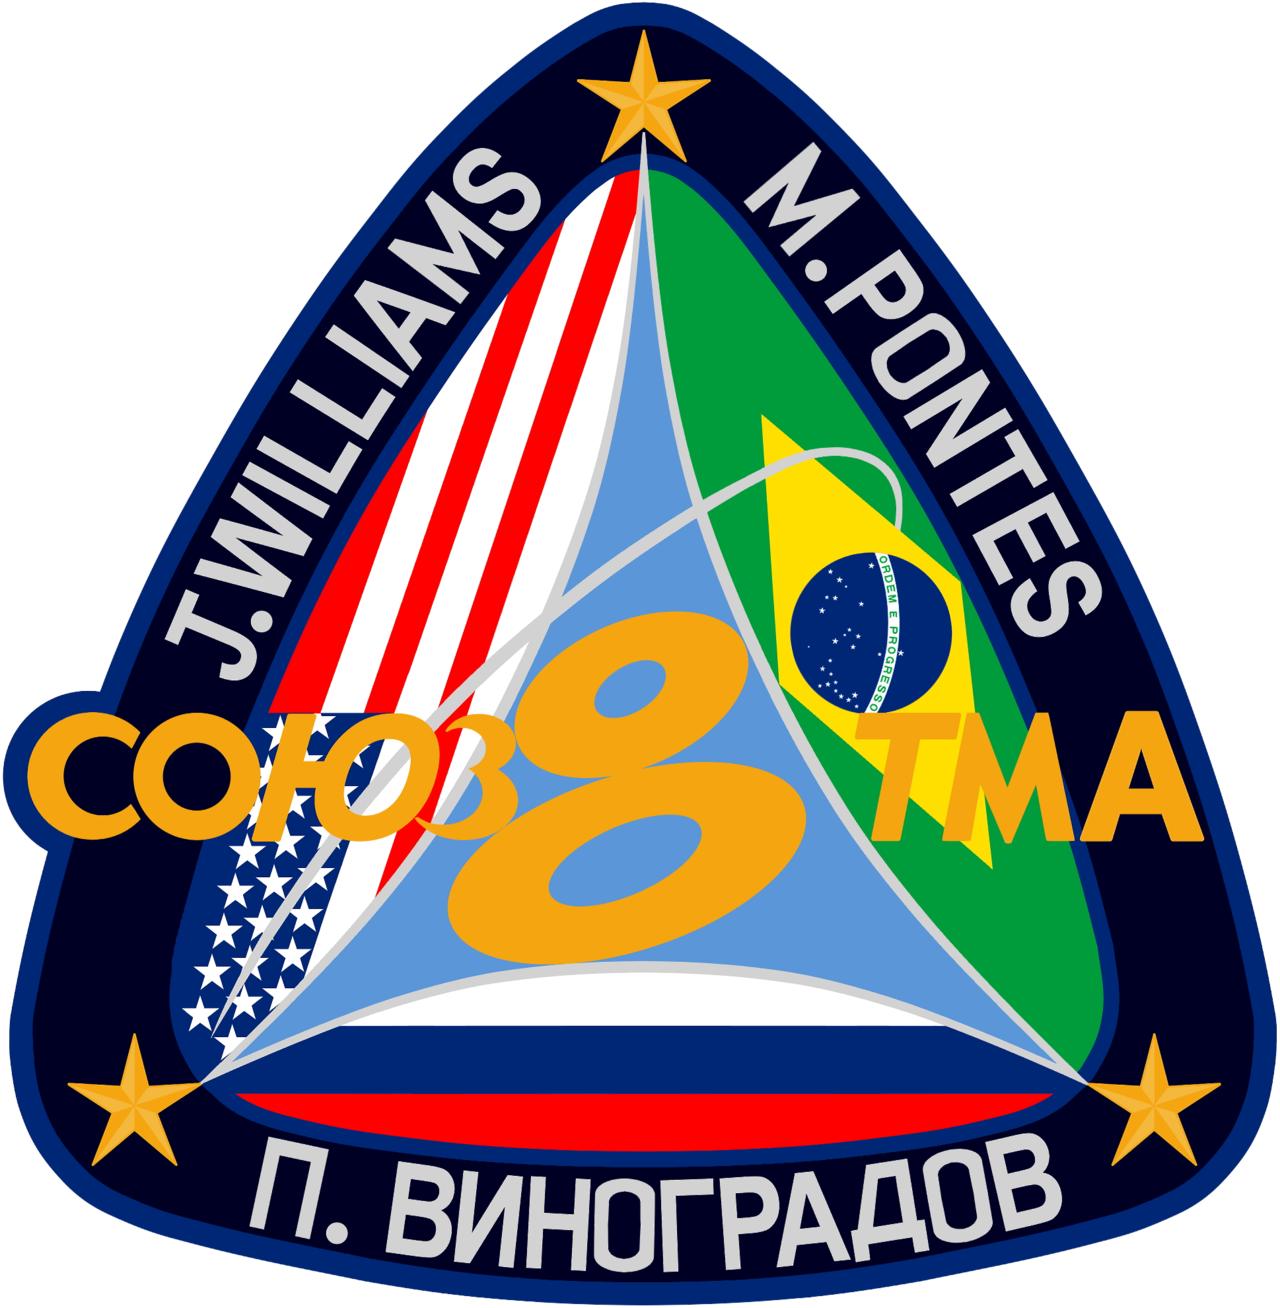 Soyuz TMA-8